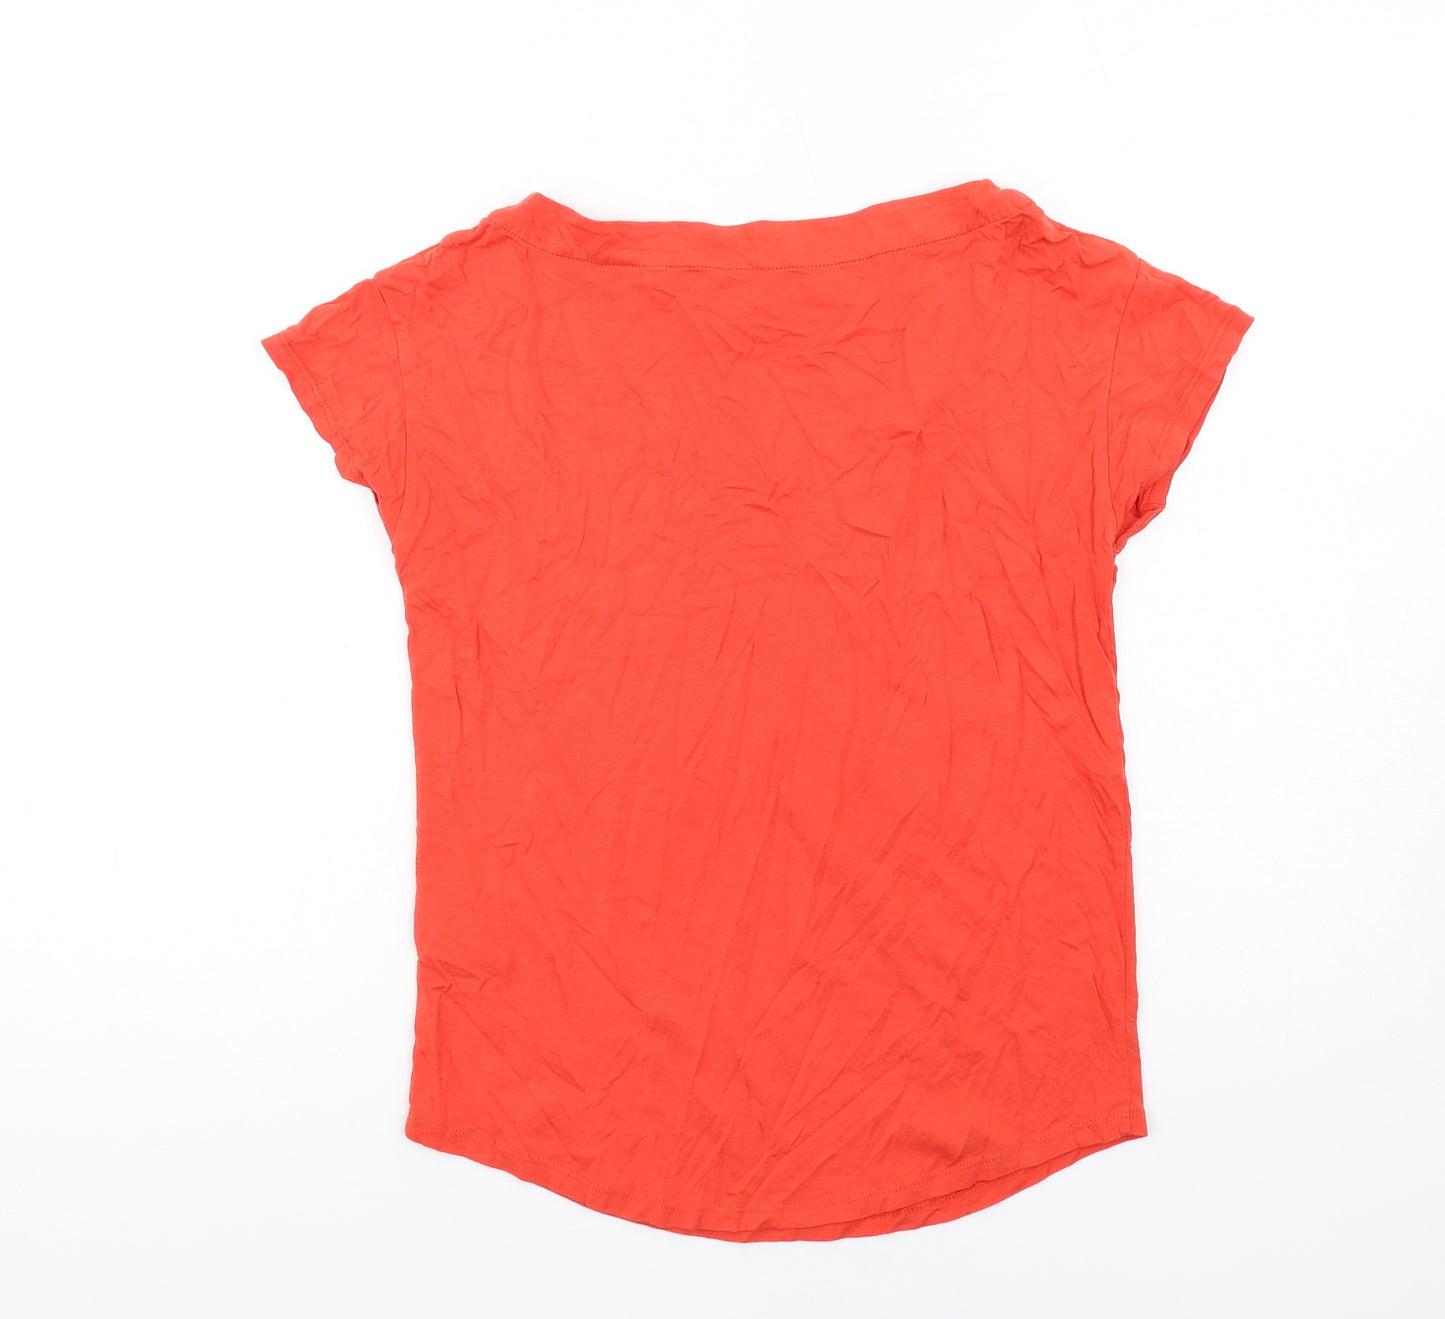 Boden Womens Orange Cotton Basic T-Shirt Size 10 Round Neck